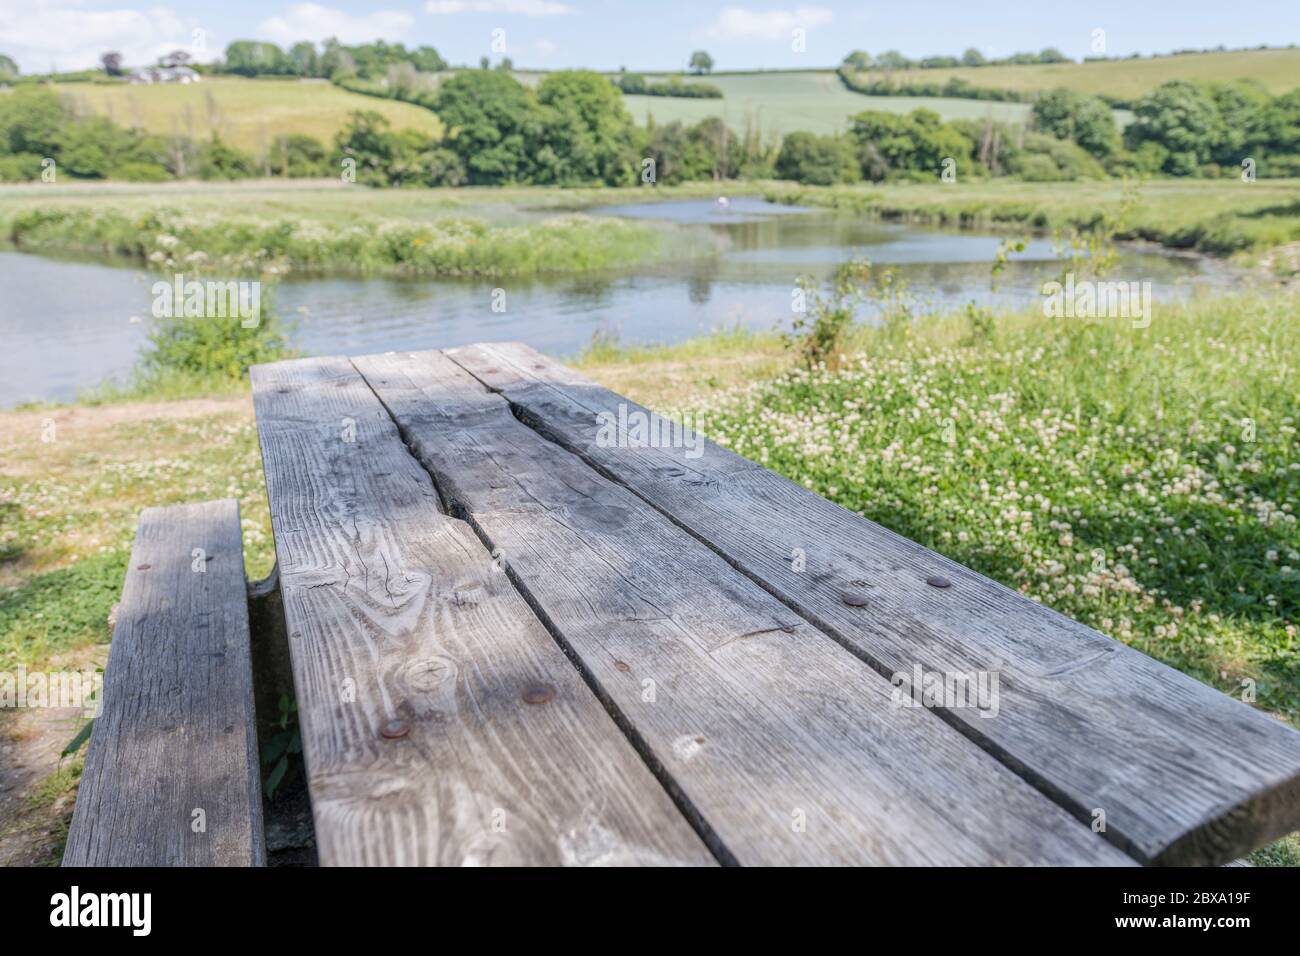 Tavolo da picnic pubblico vuoto al sole accanto alle acque del fiume Fowey a Lostwithiel, metafora spazi pubblici vuoti durante il blocco Covid-10. Foto Stock